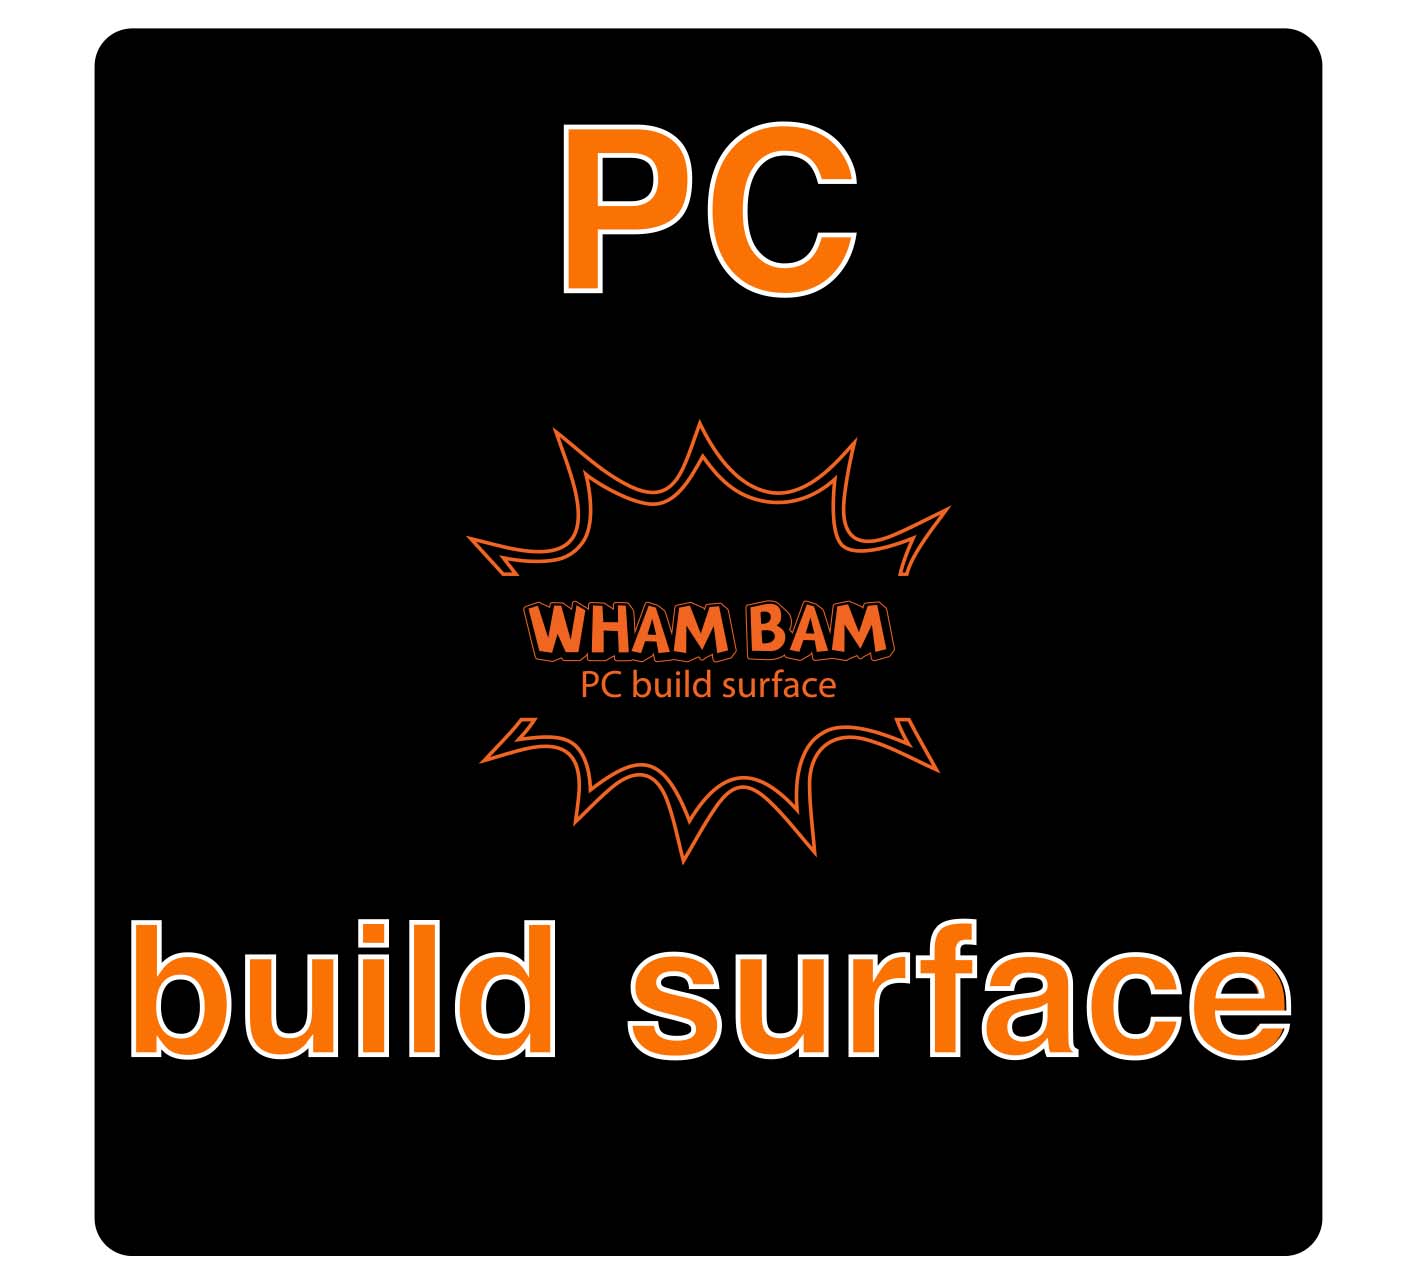 PC Build Surface (Classic Black) - 330 x 330 - Geeetech A30, Raise3d Pro2 & Pro2 Plus, TronXY X3S  X5S